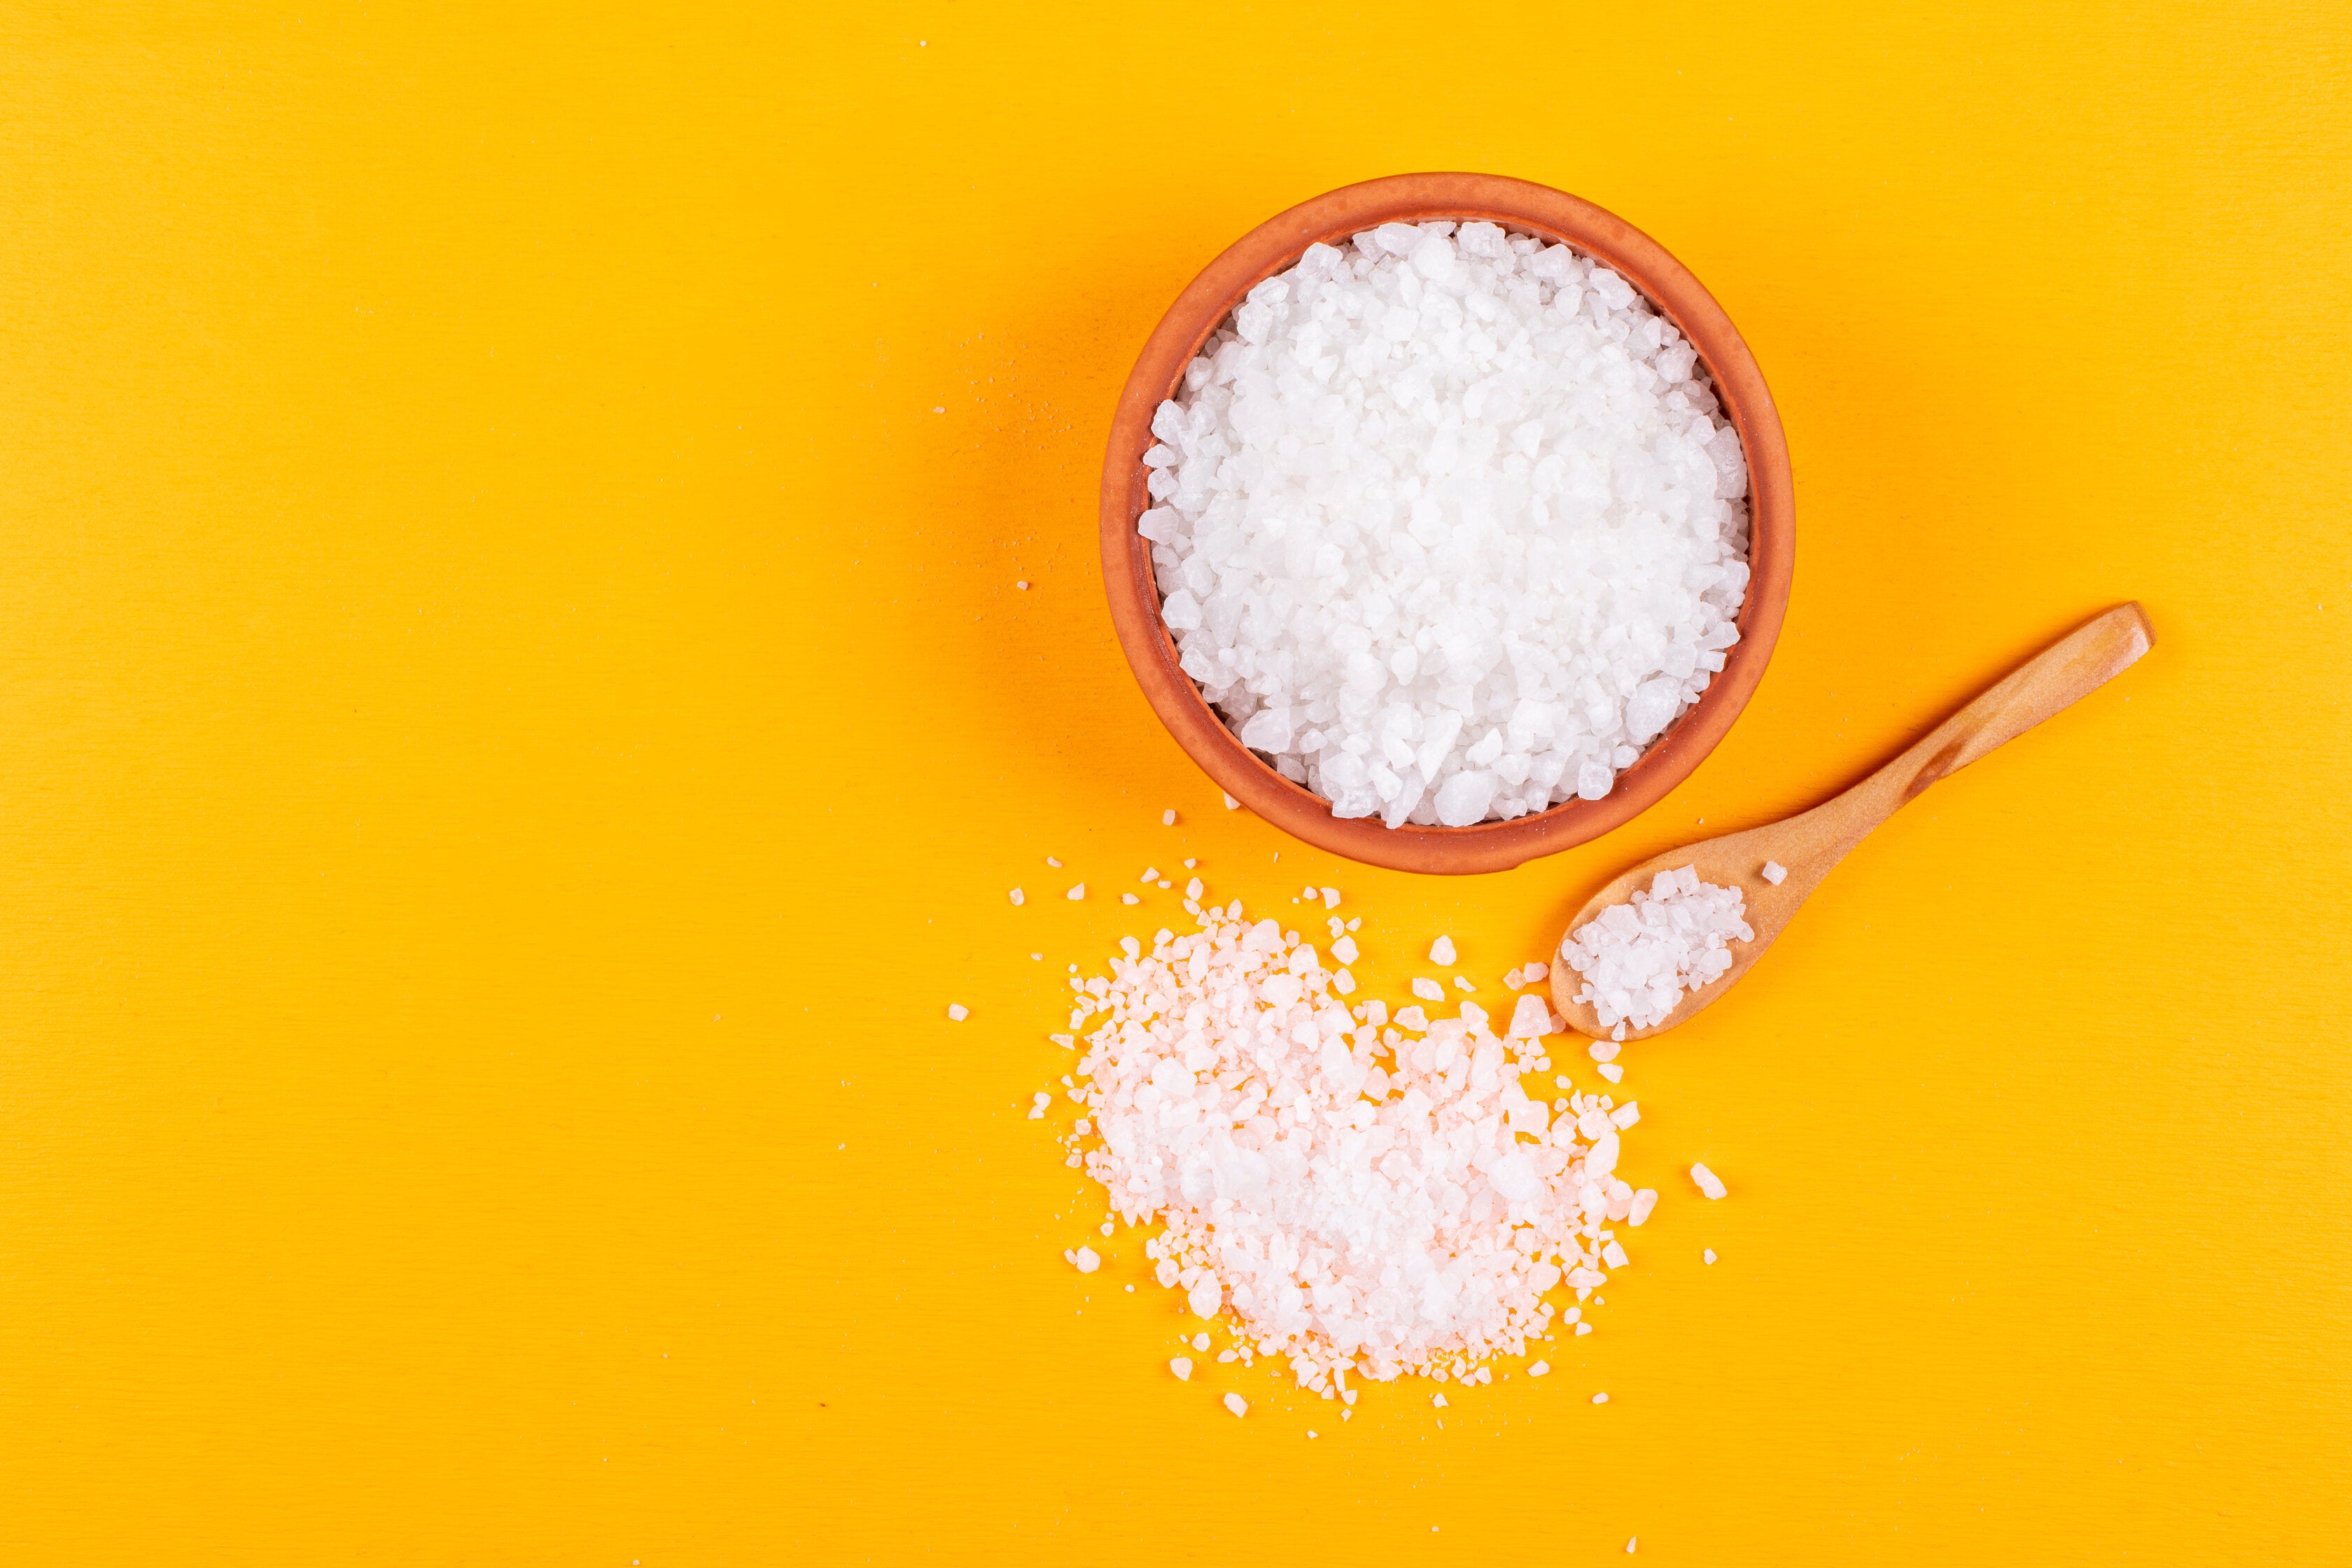 Reduce salt intake